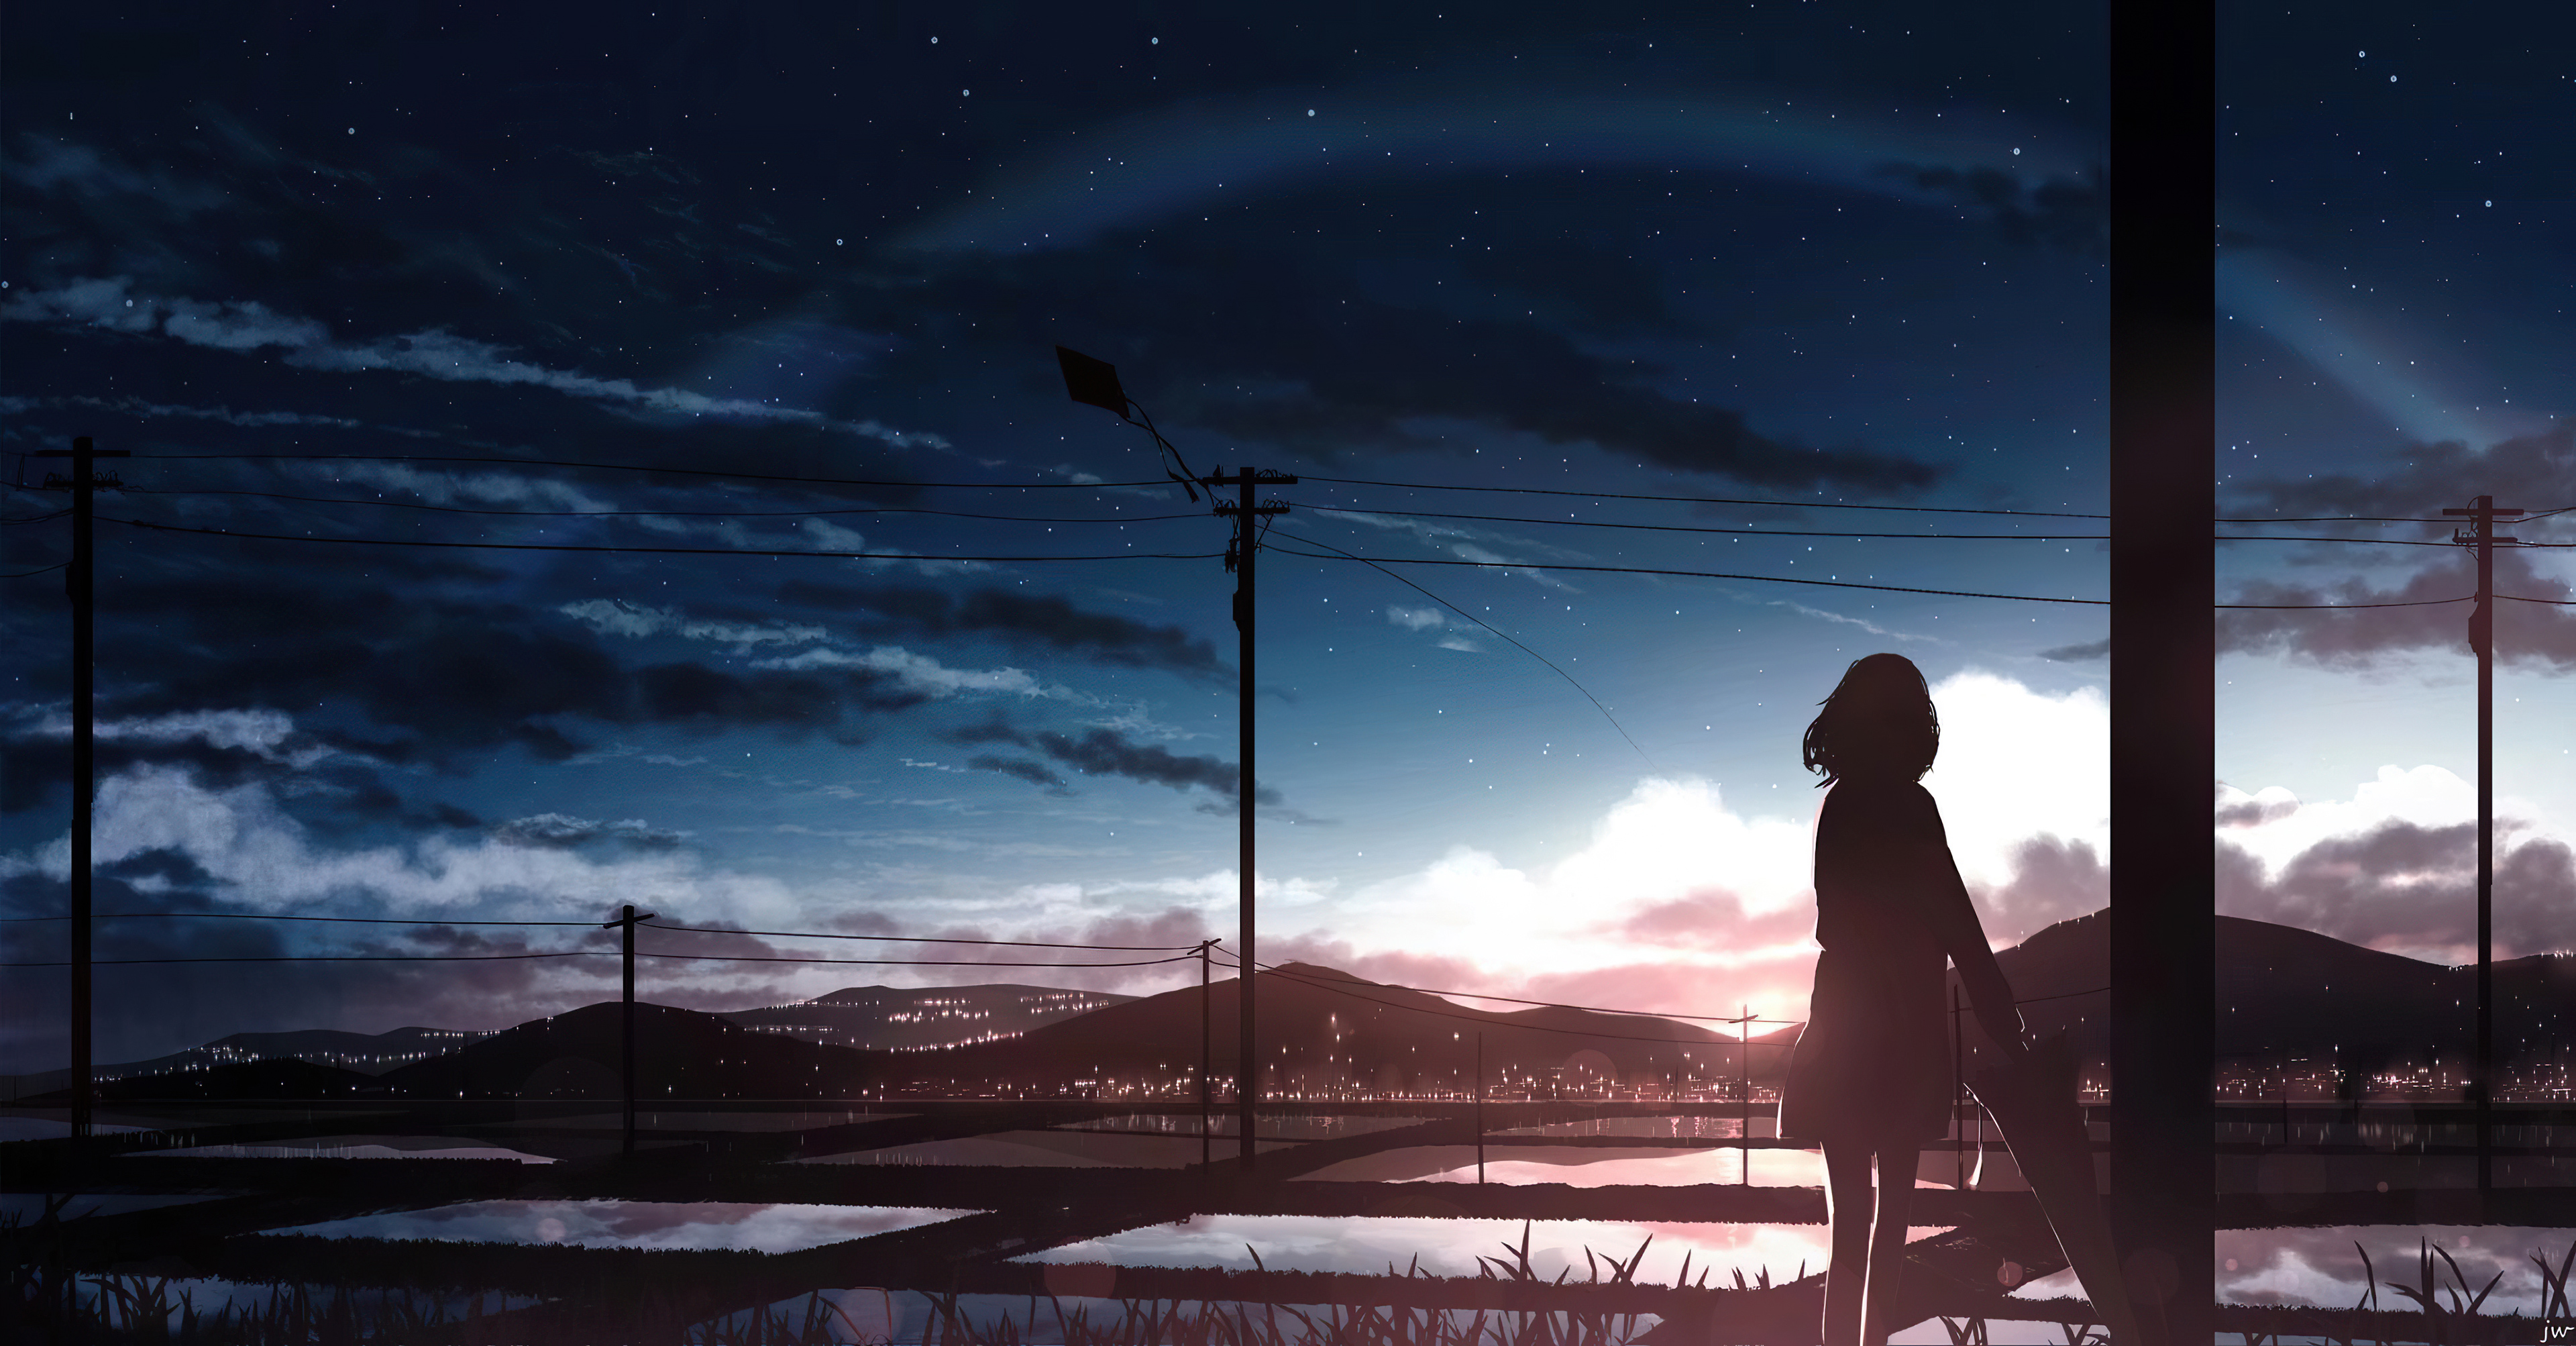 1920x1080 Anime Girl Moescape Alone Standing 4k Laptop Full HD ...- Với bộ hình nền Anime Girl Moescape đầy nghẹn ngào và cảm xúc này, bạn sẽ được thực sự đắm mình trong những khoảnh khắc cô nàng đơn độc đứng giữa ánh sáng và bóng tối. Với độ phân giải 4K cho laptop, hình nền Anime này sẽ mang đến cho bạn một trải nghiệm đầy cảm xúc và ấn tượng.